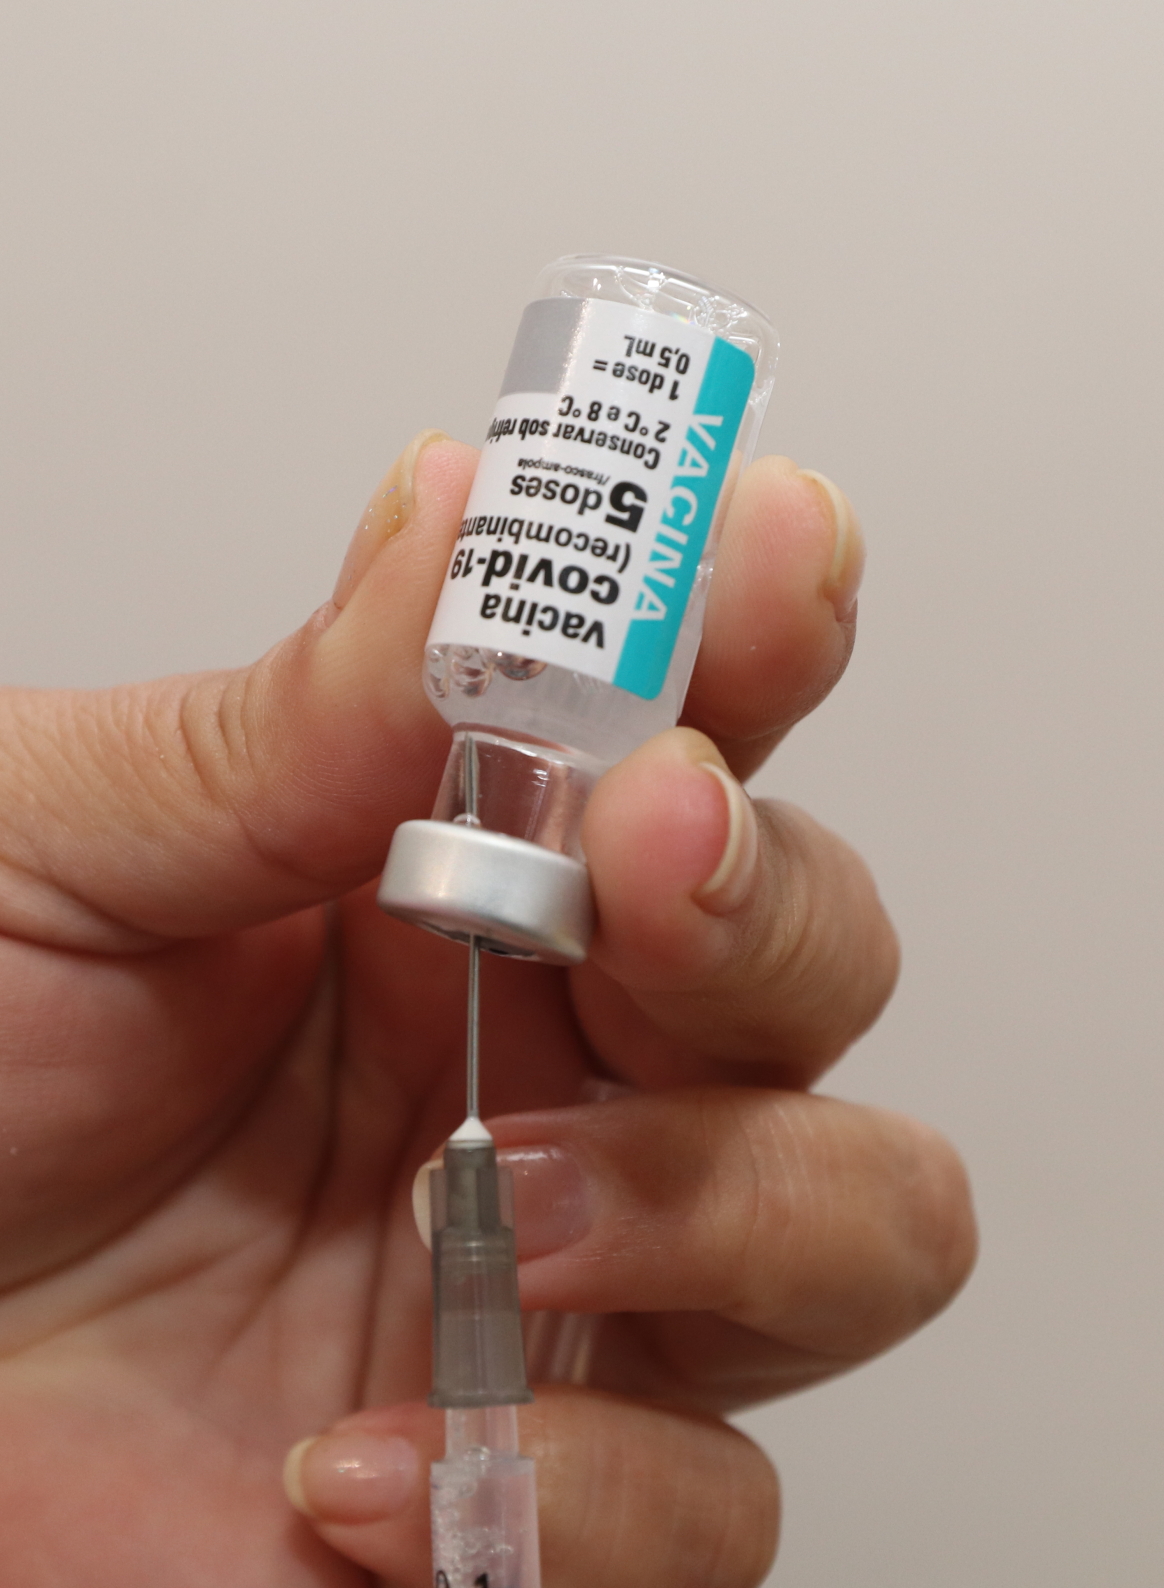 Pessoas acima de 35 anos com comorbidades podem se vacinar na quarta-feira em Jacareí